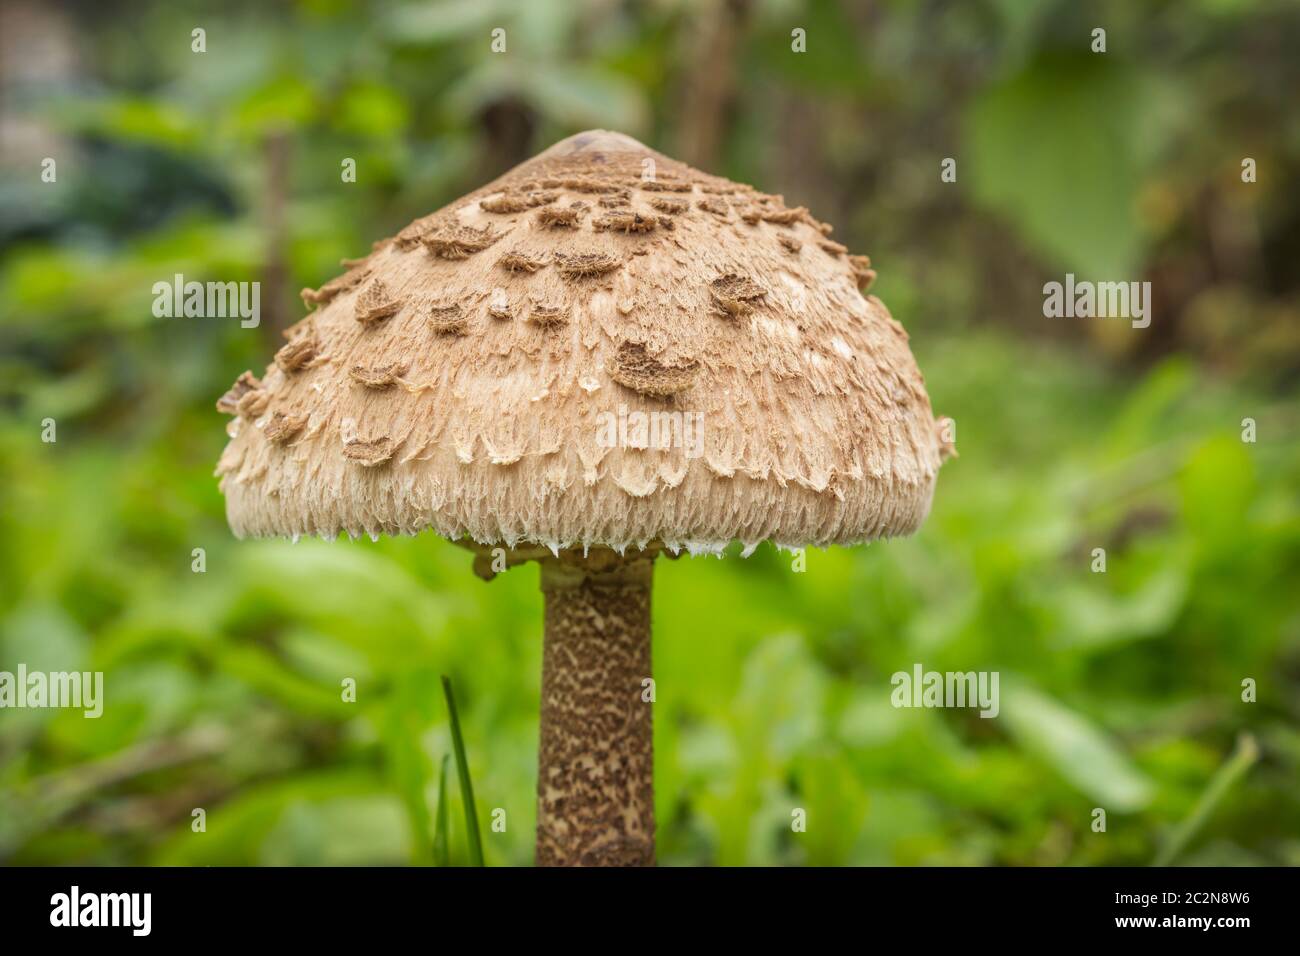 Ombrello funghi immagini e fotografie stock ad alta risoluzione - Alamy